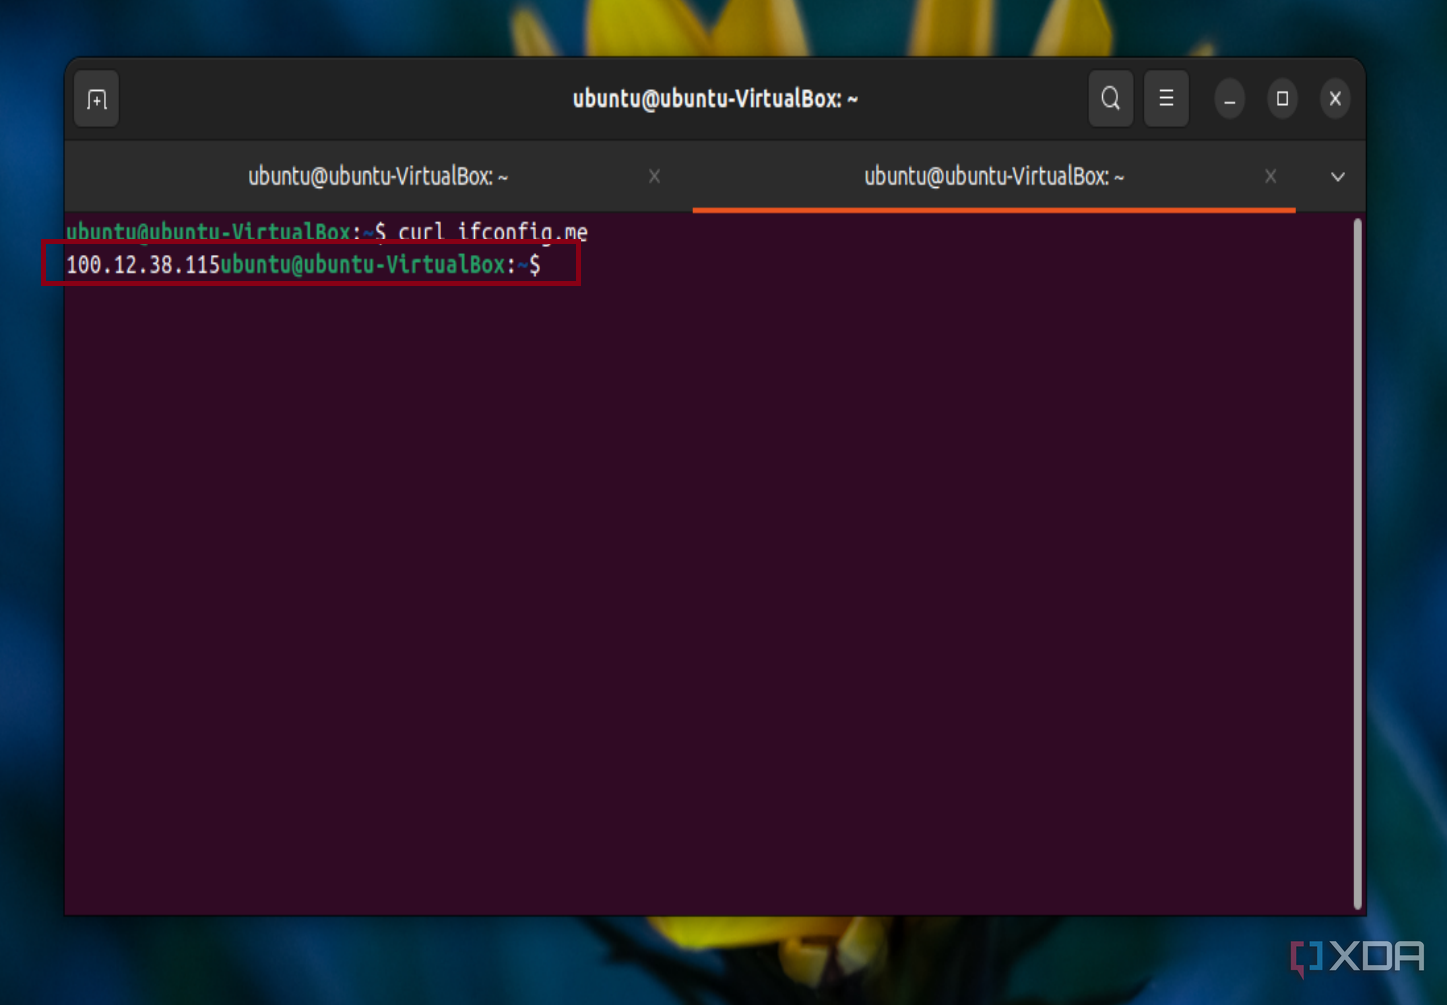 Скриншот команды Curl в Ubuntu для отображения общедоступного IP-адреса. 